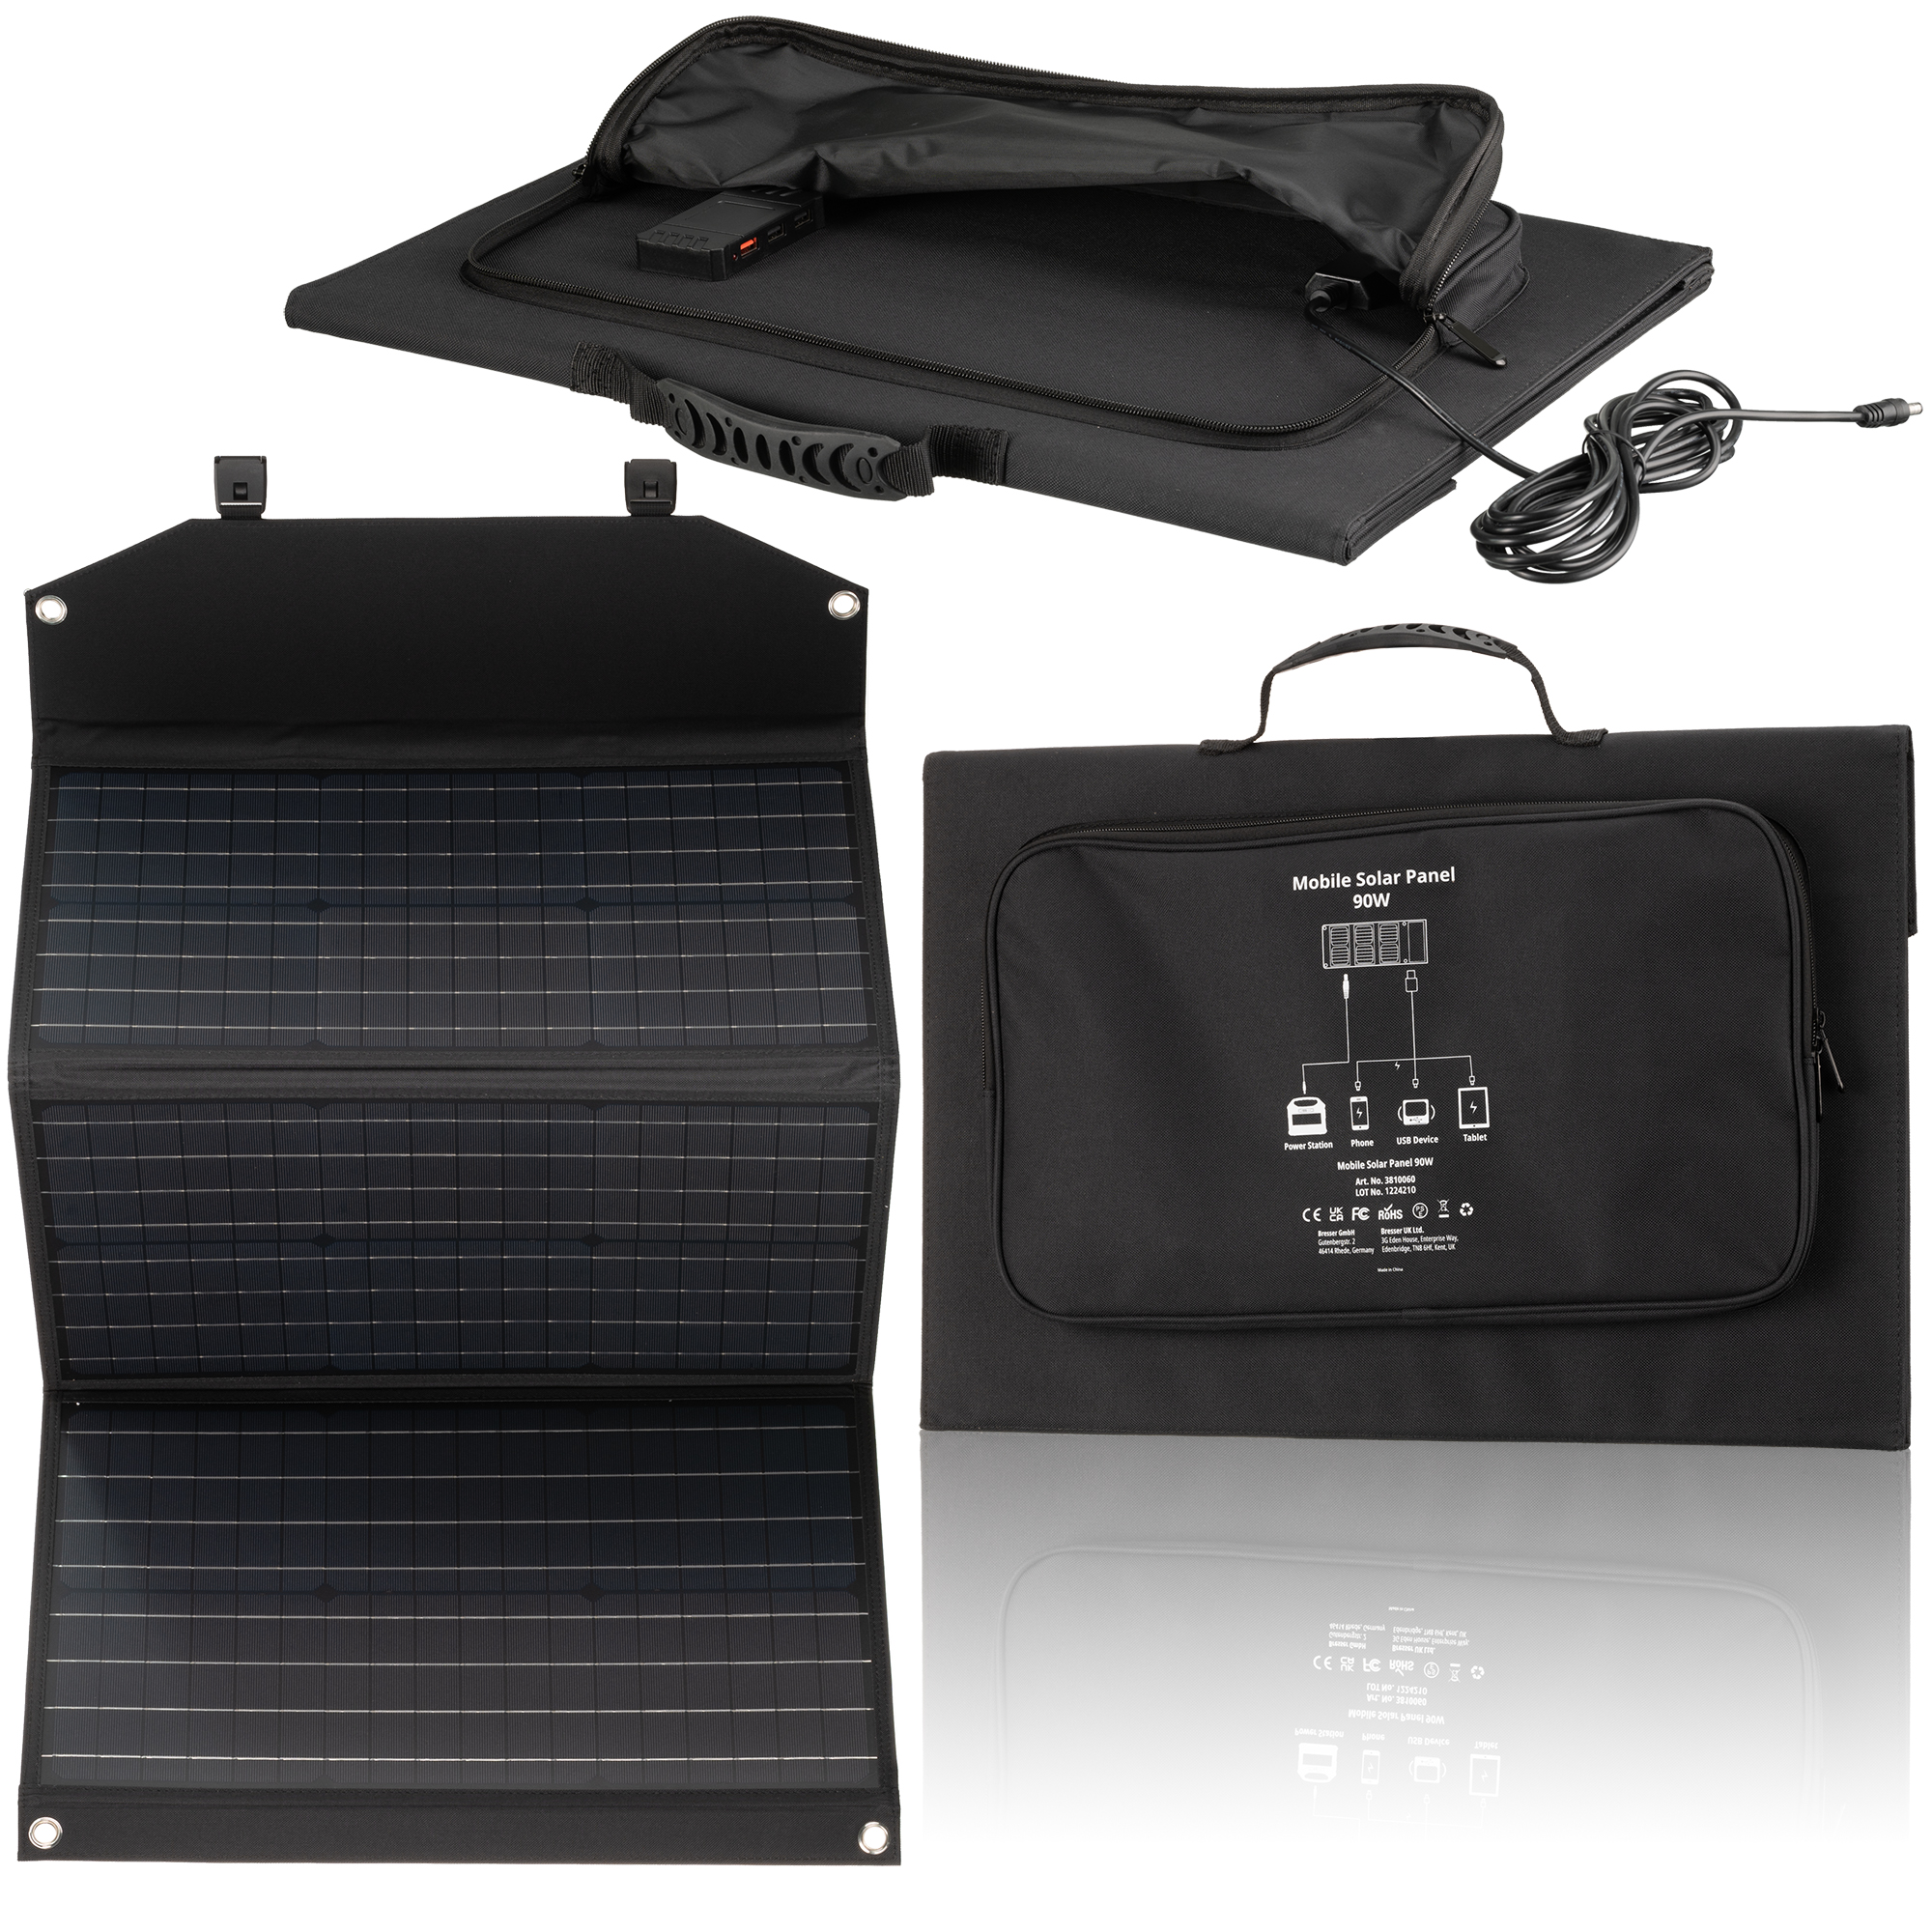 Caricabatterie solare portatile BRESSER 90 watt con alimentazione USB e CC